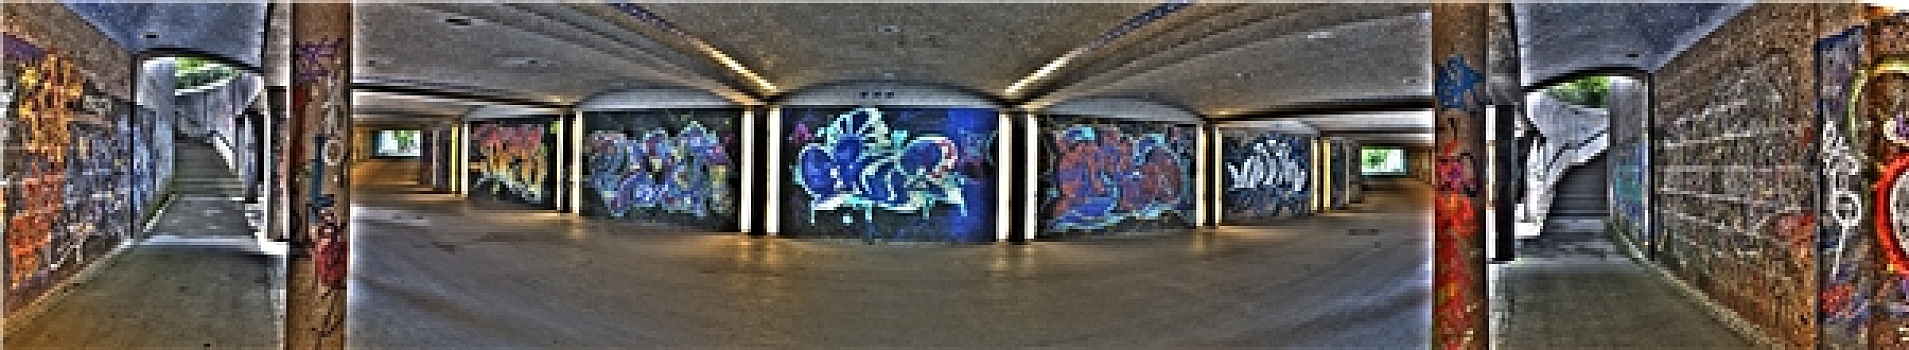 隧道,涂鸦,全景